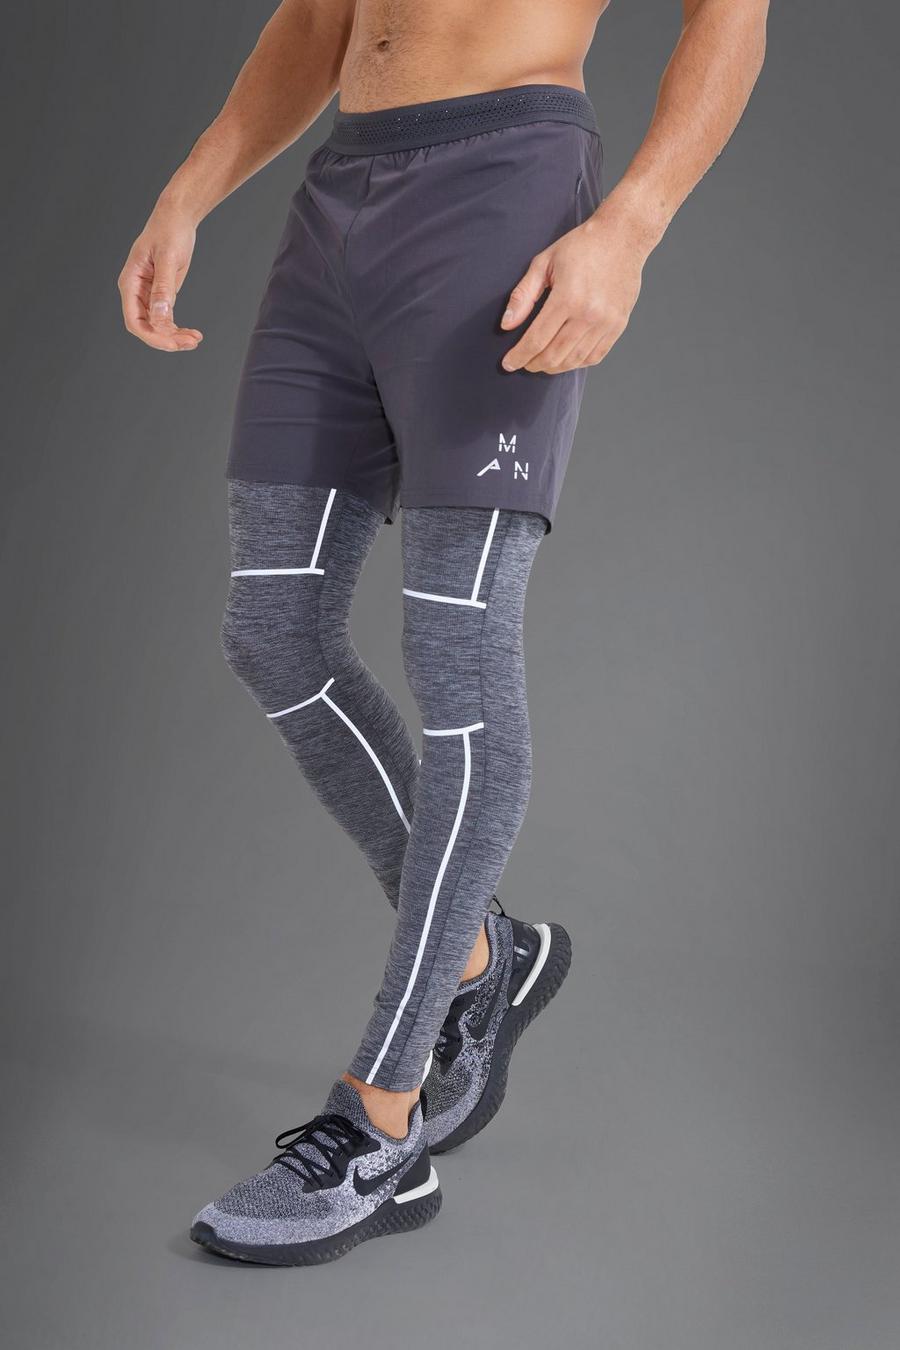 Pantaloncini Active Gym riflettenti 2 in 1 con legging, Charcoal grigio